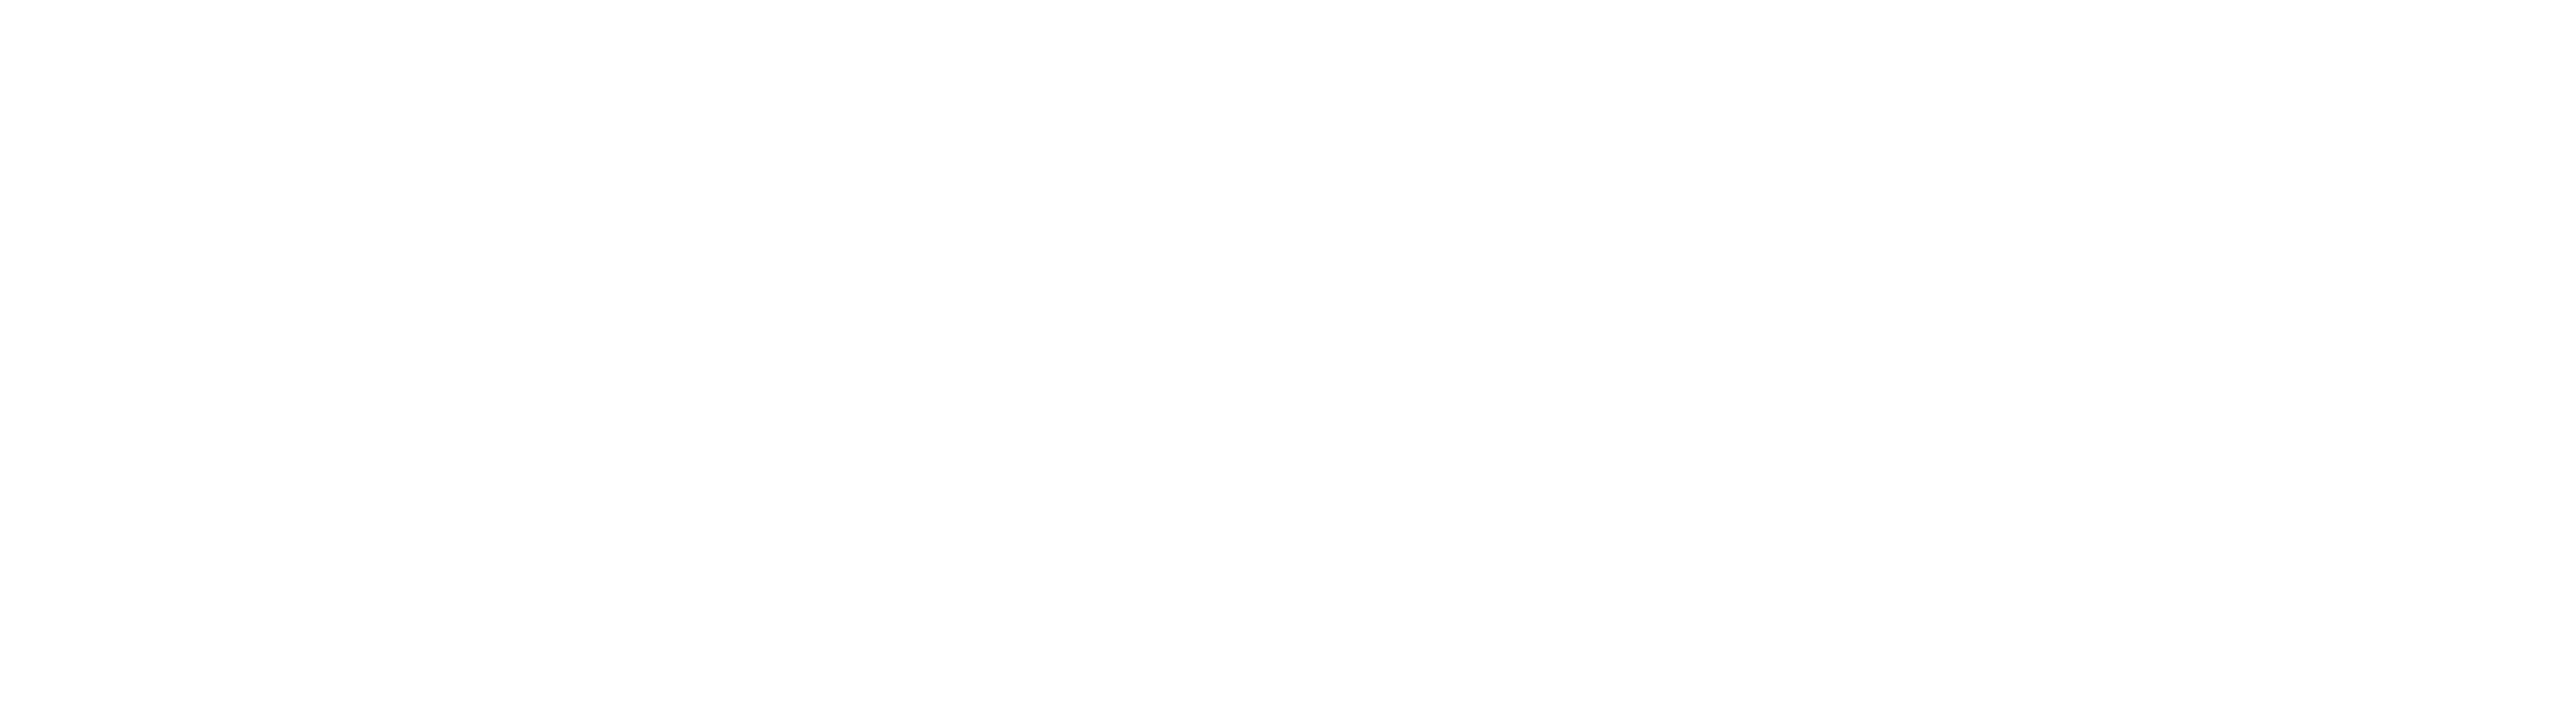 楽天モバイルeSIM「超」入門ガイド